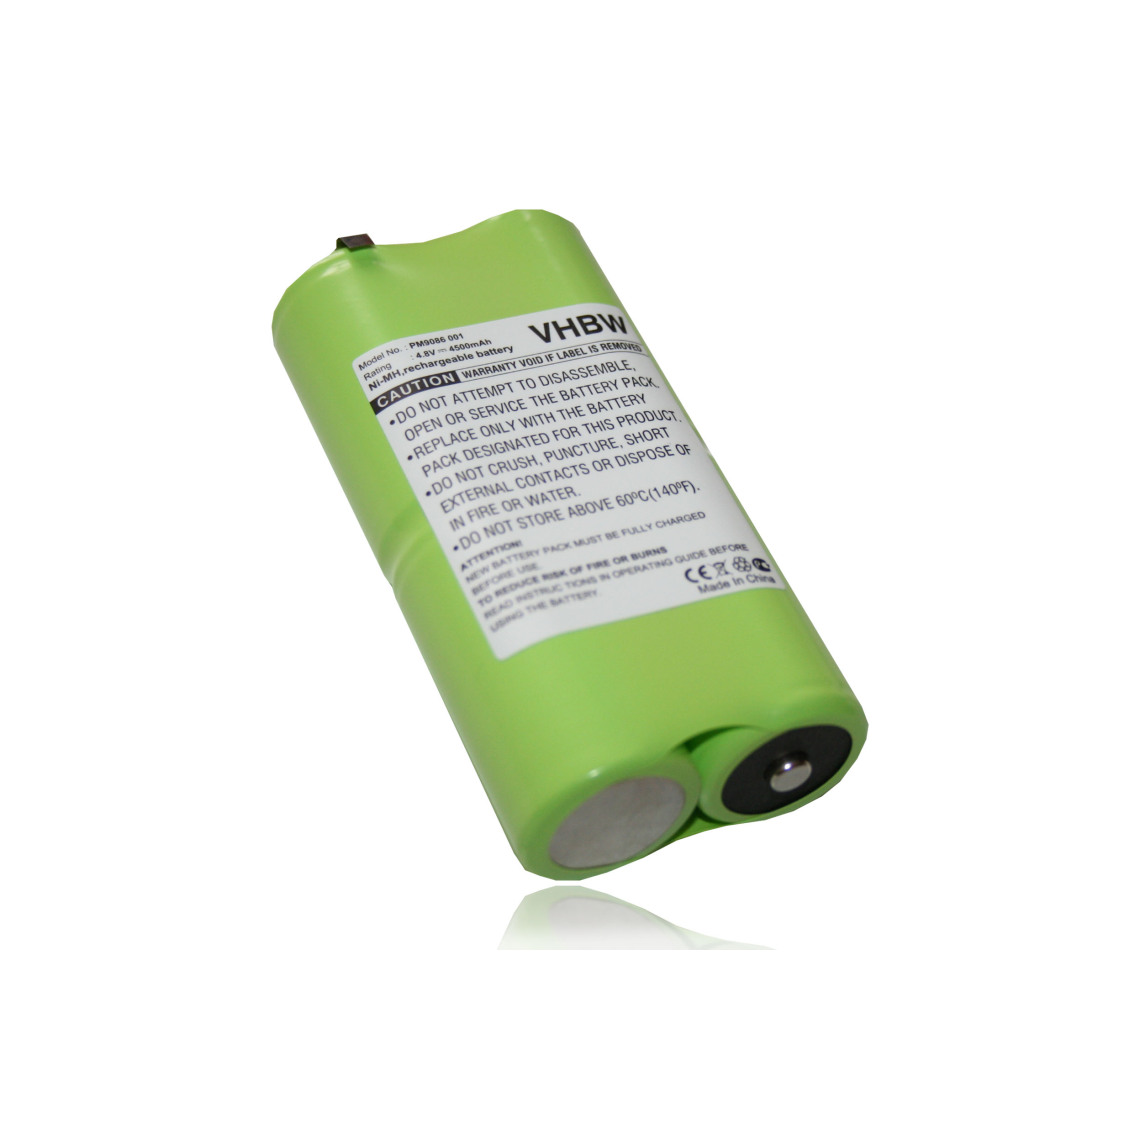 Vhbw - vhbw Batterie compatible avec Fluke 90, 91, 92, 93, 95, 96, 97, 98, 99, 983, 92B, 96B, 97 Auto, 98 Auto outil de mesure (4500mAh 4,8V NiMH) - Piles rechargeables